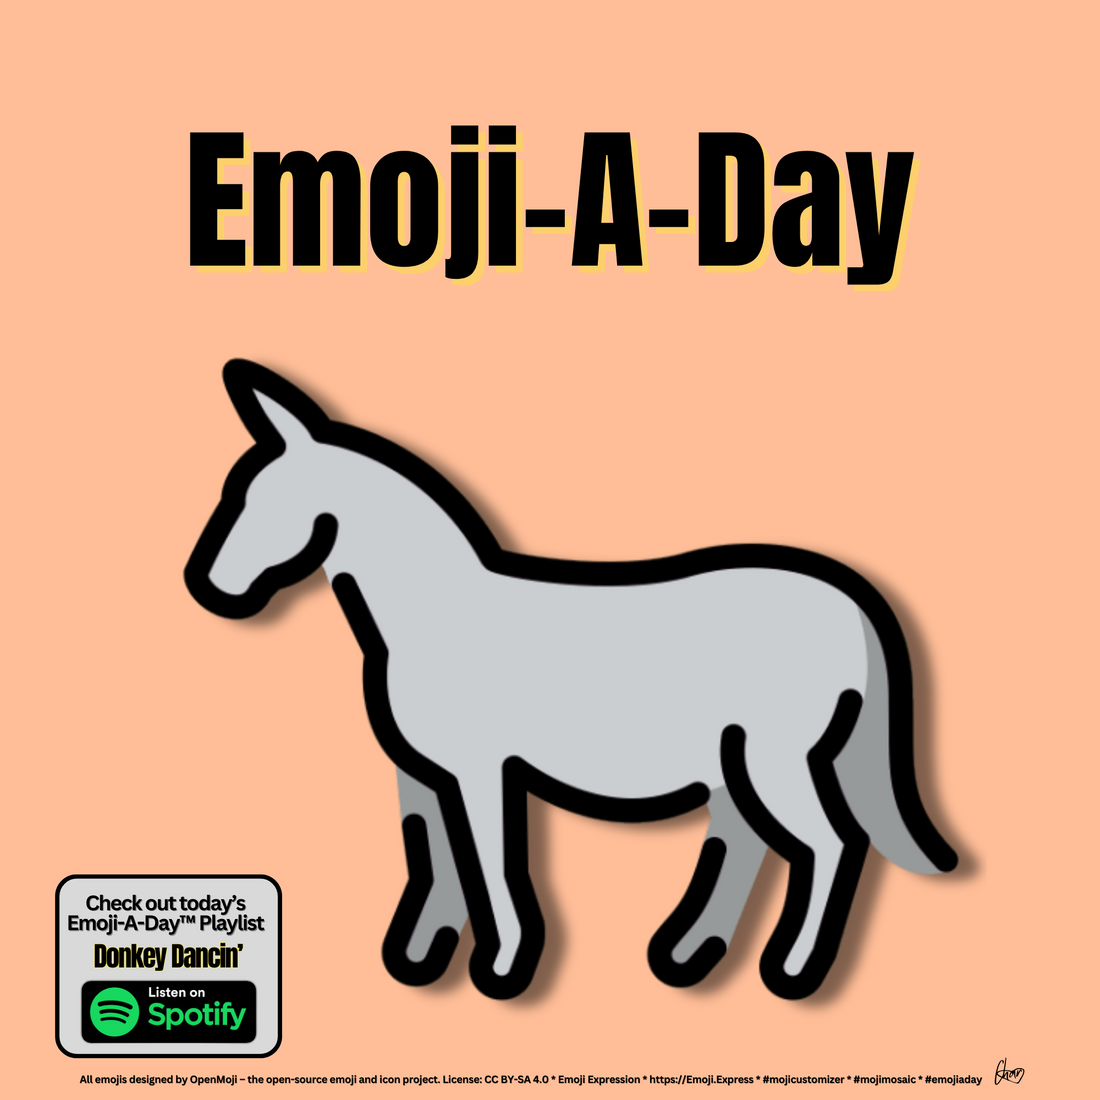 Emoij-A-Day theme with Donkey emoji and Donkey Dancin' Spotify Playlist